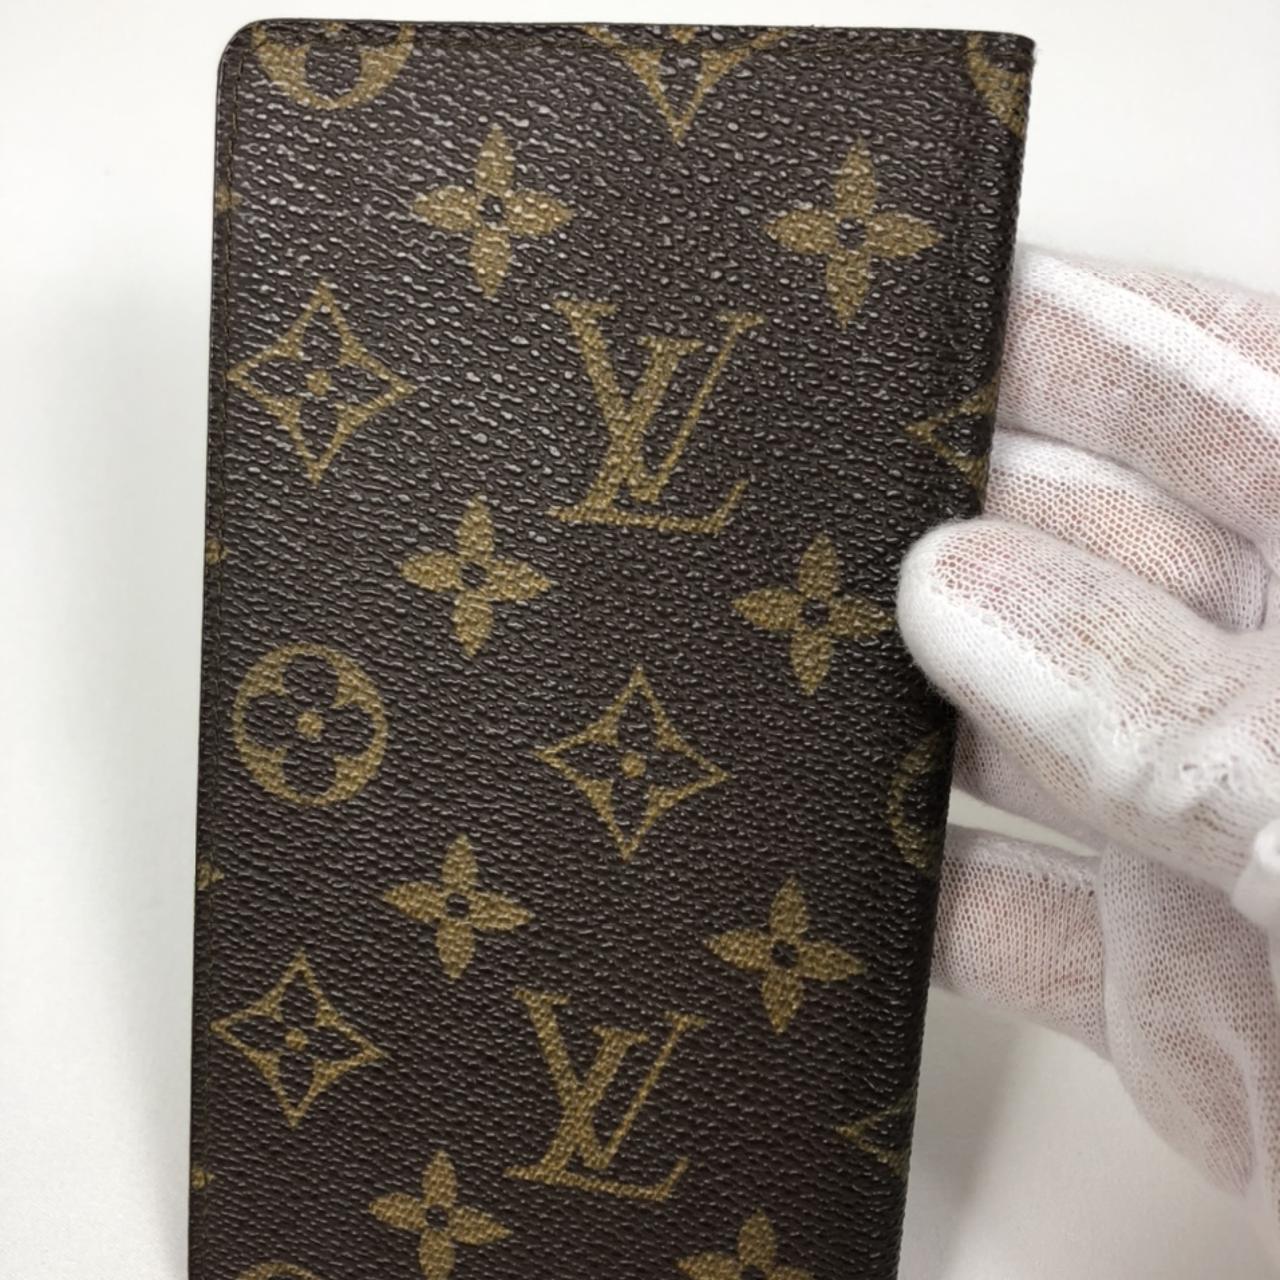 Vintage Louis Vuitton Wallet Gently Used - Depop